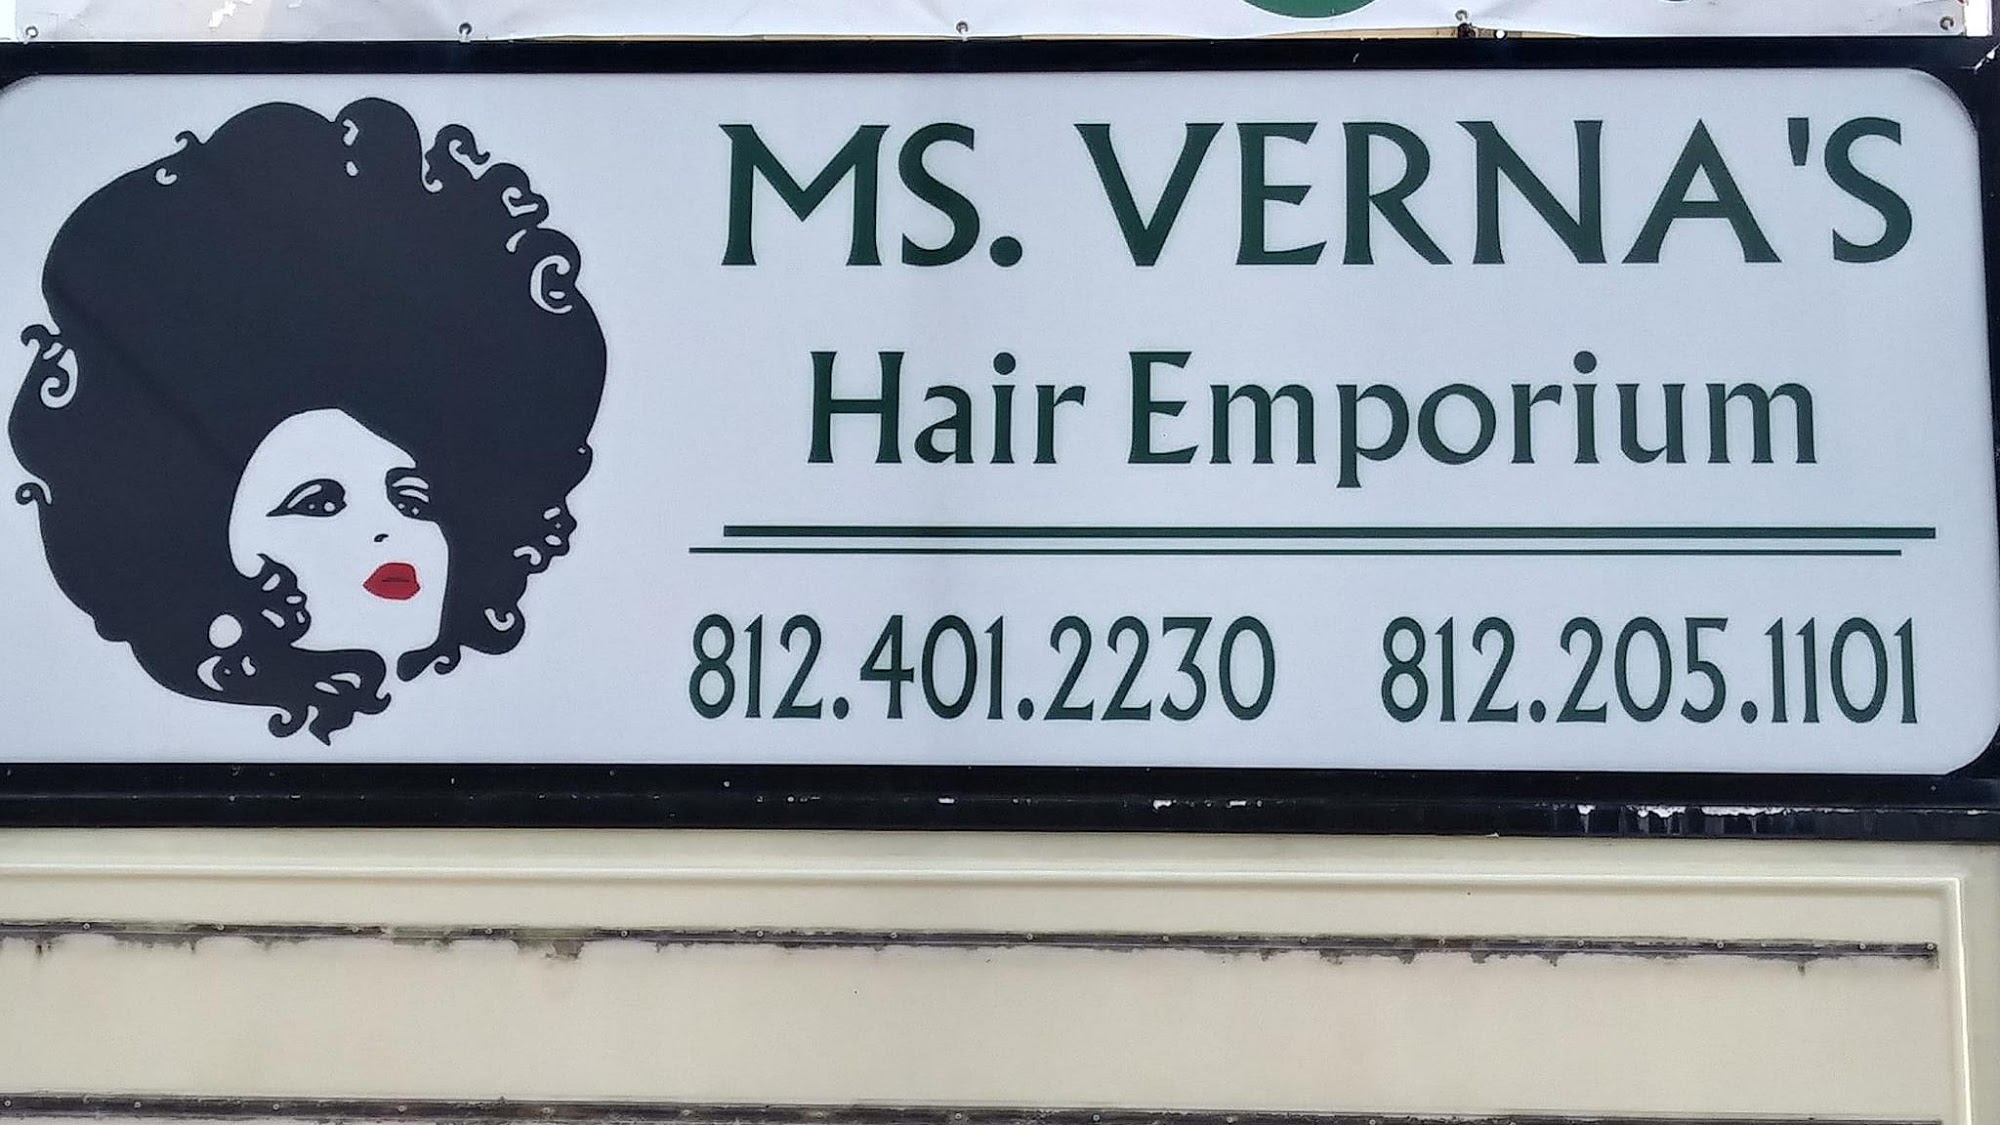 Ms. Verna's Hair Emporium